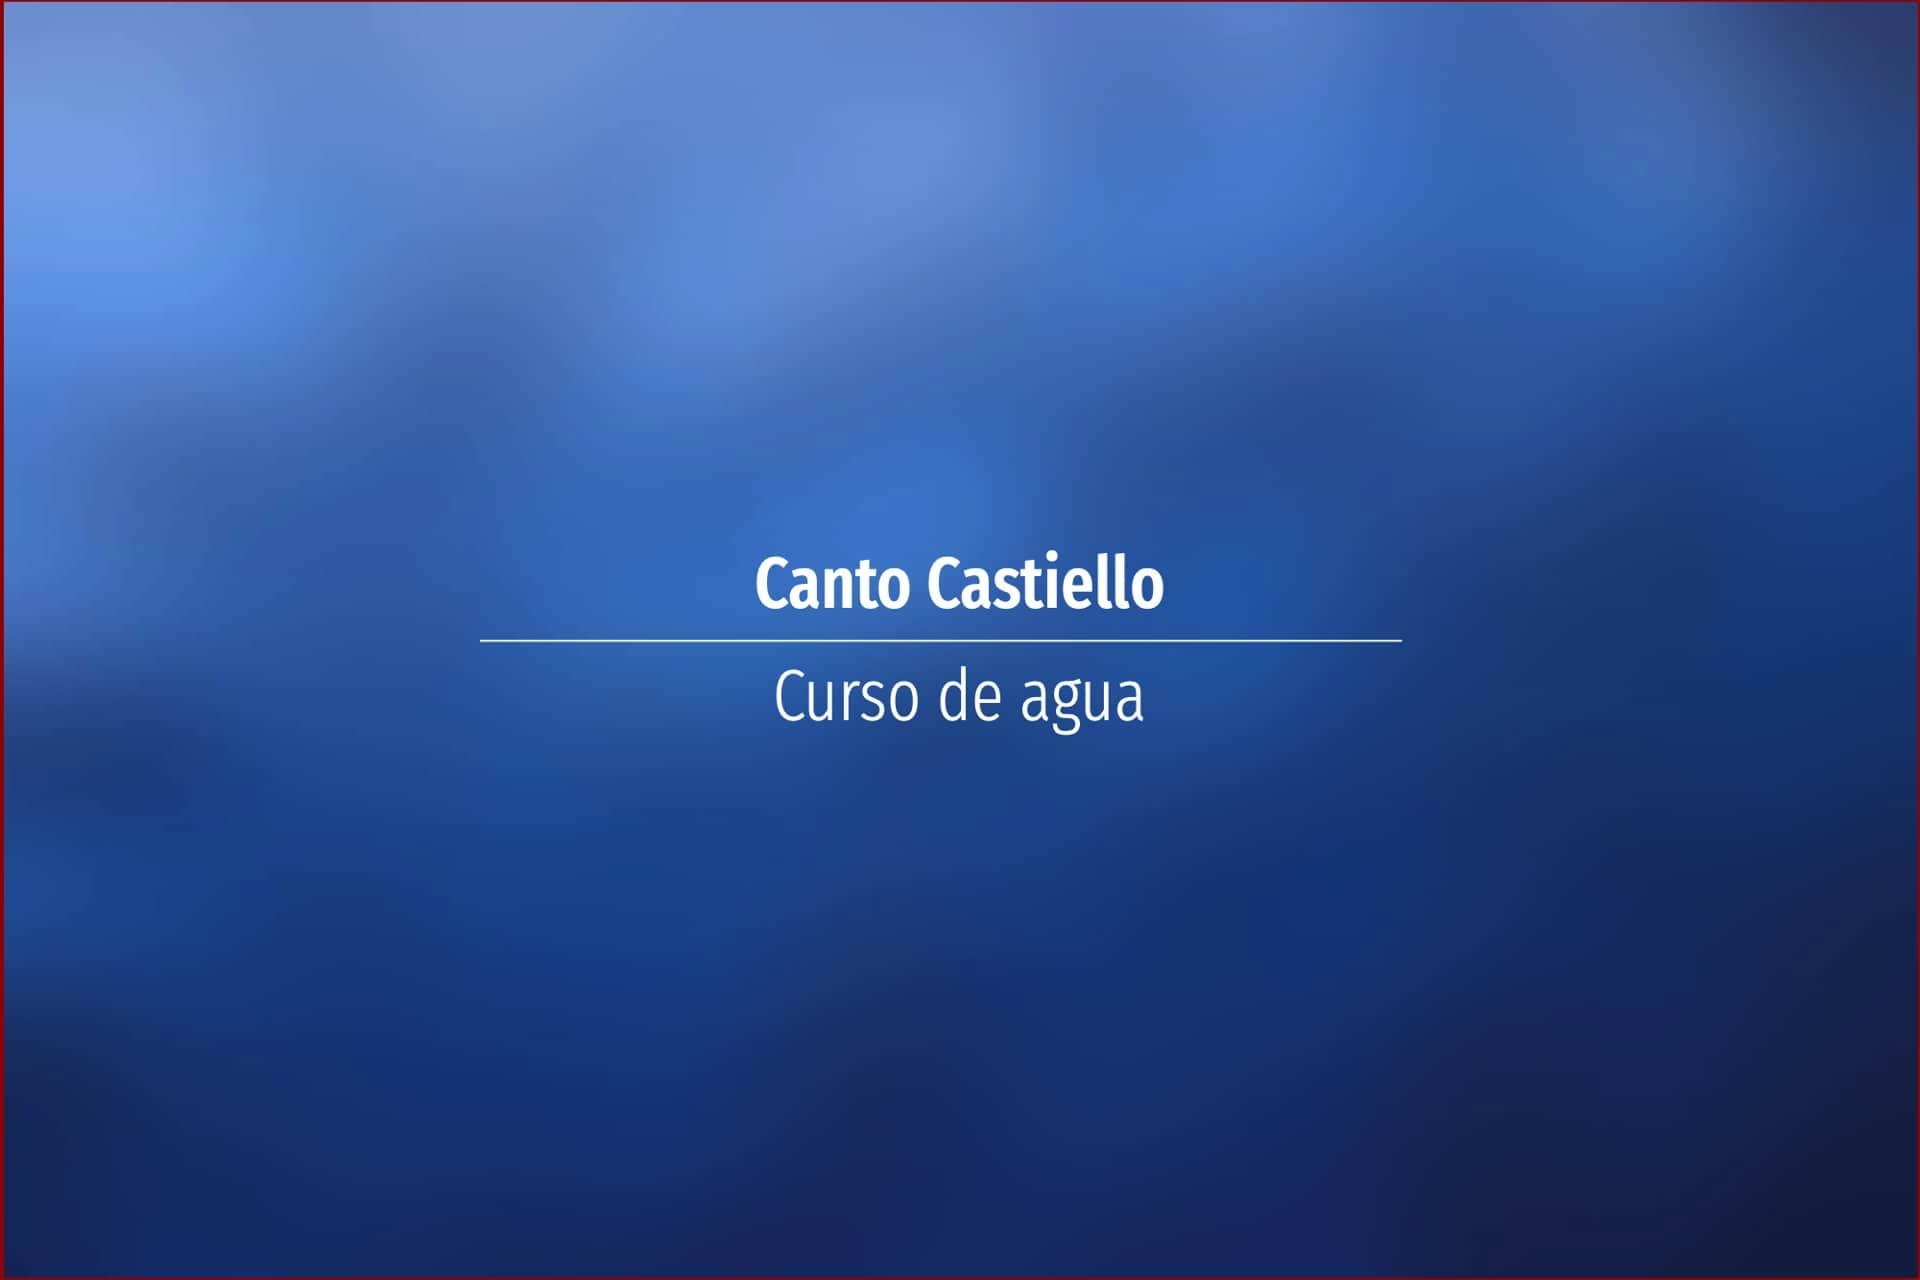 Canto Castiello